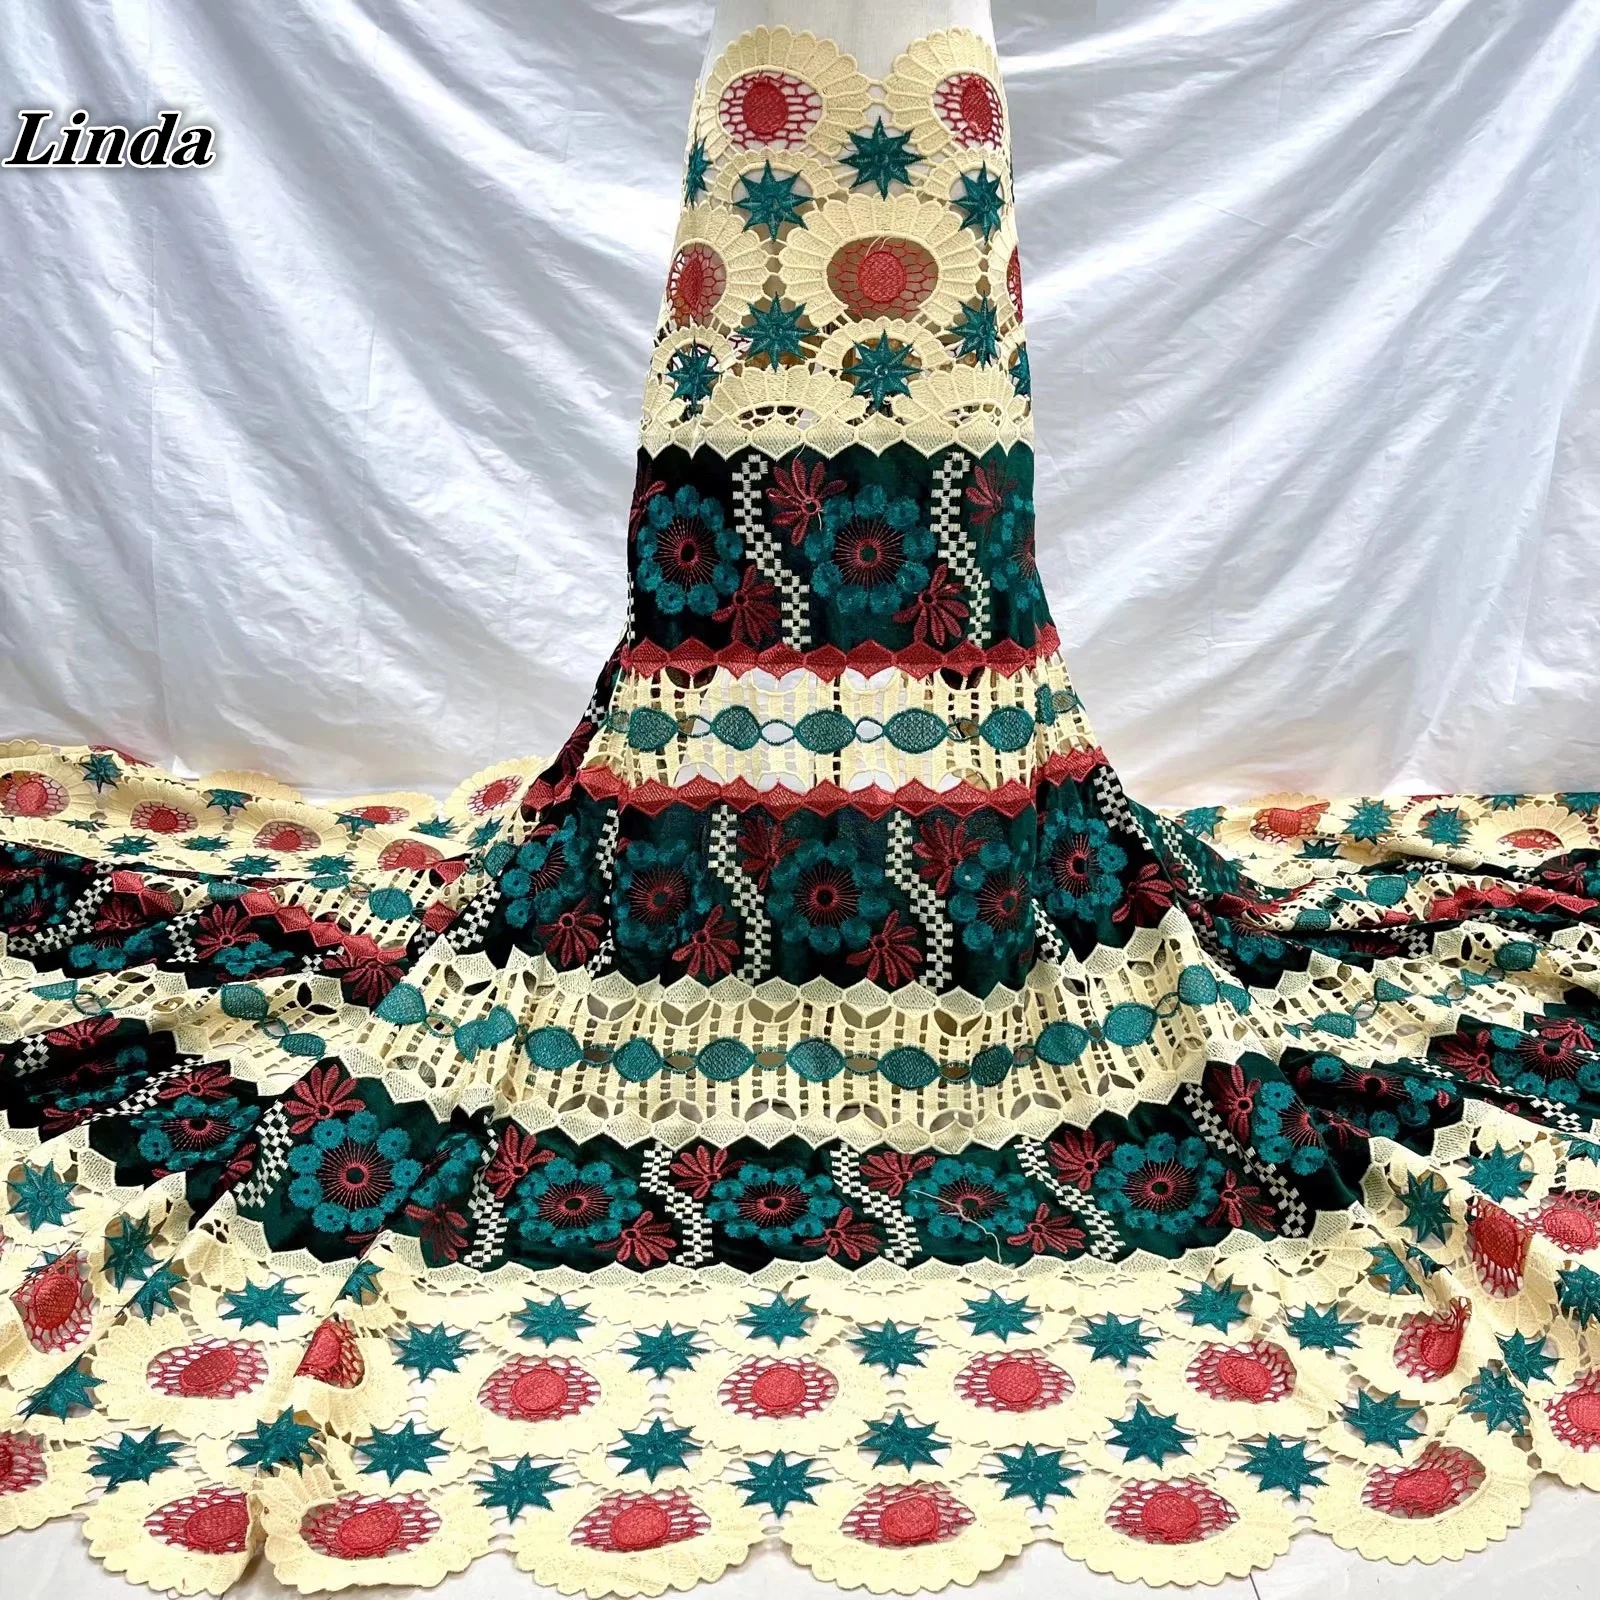 

Кружевная ткань Linda, африканская зеленая гипюровая ткань 2021, Высококачественная нигерийская кружевная ткань, водорастворимое Свадебное кр...